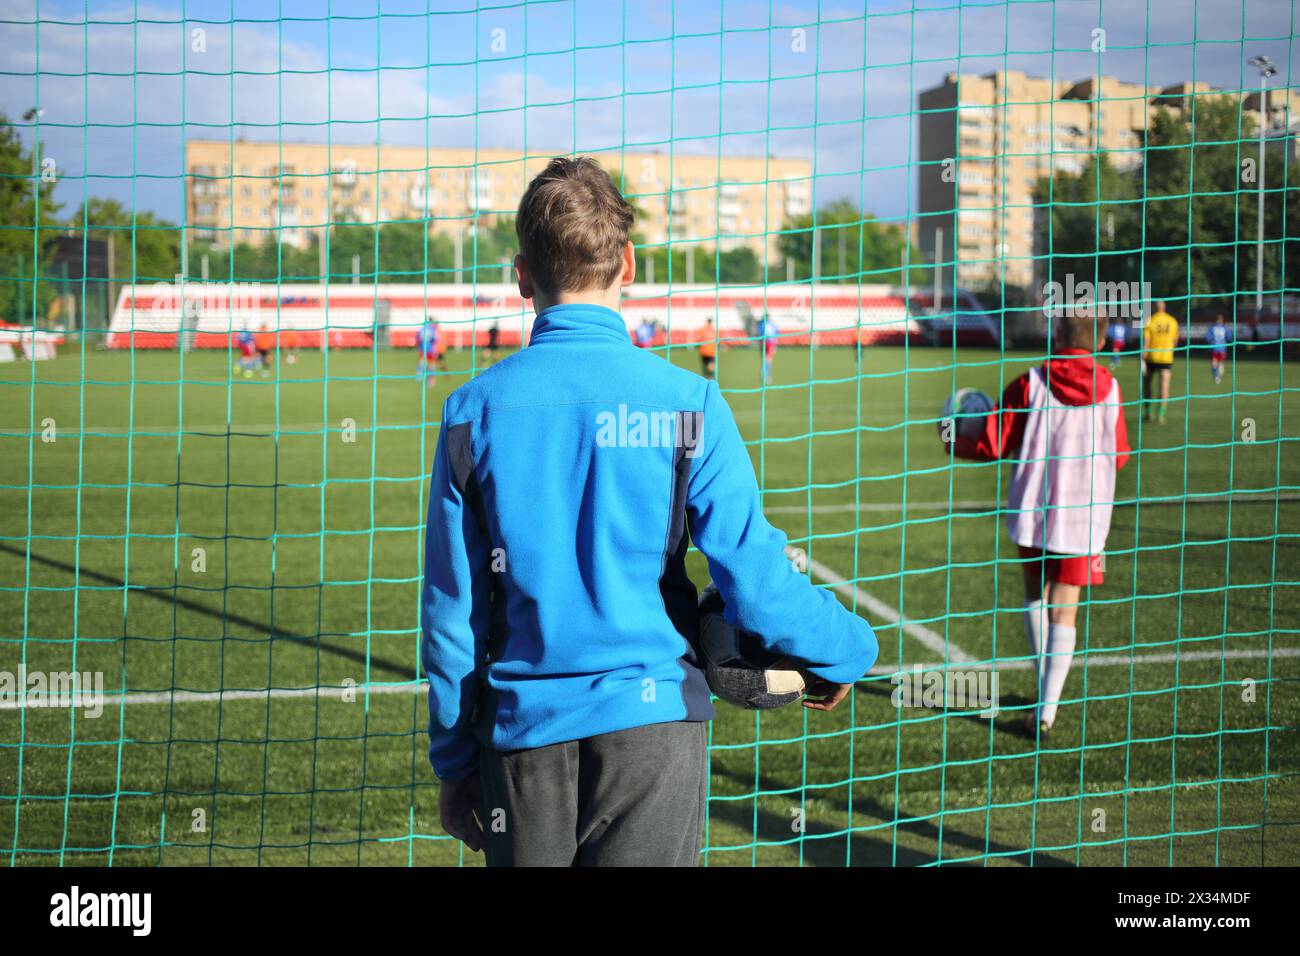 Junger Mann in einer blauen Sportjacke mit einem Ball, der ein Fußballspiel im Stadion über dem Netz beobachtet, Blick von hinten Stockfoto